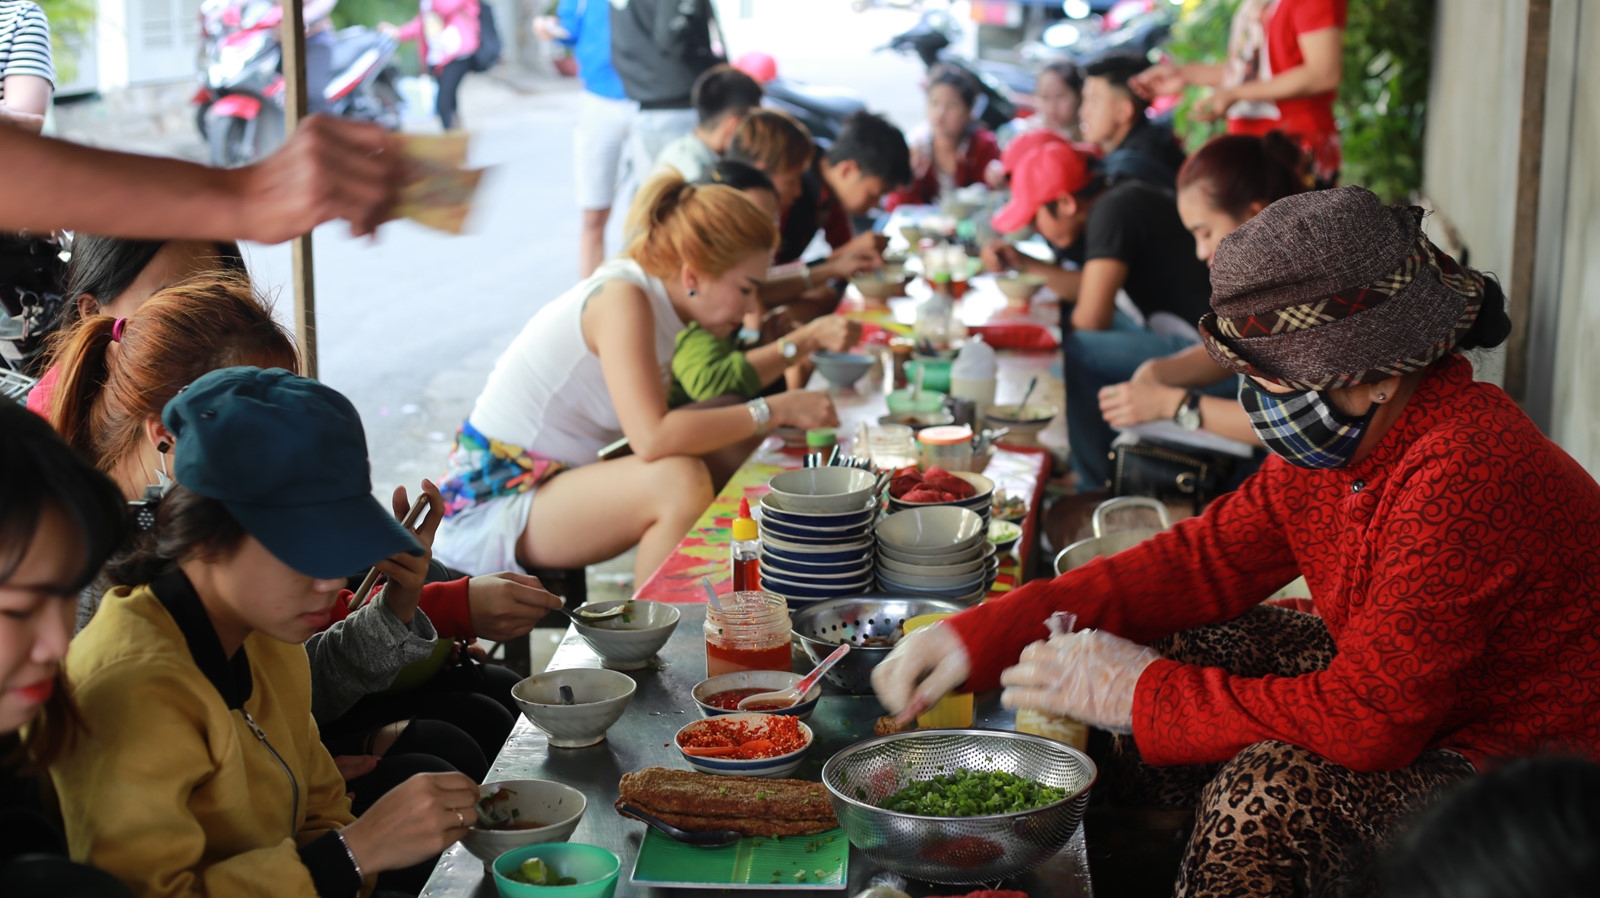 Du lịch Nha Trang nhất định phải ăn “Bánh canh cứu đói”